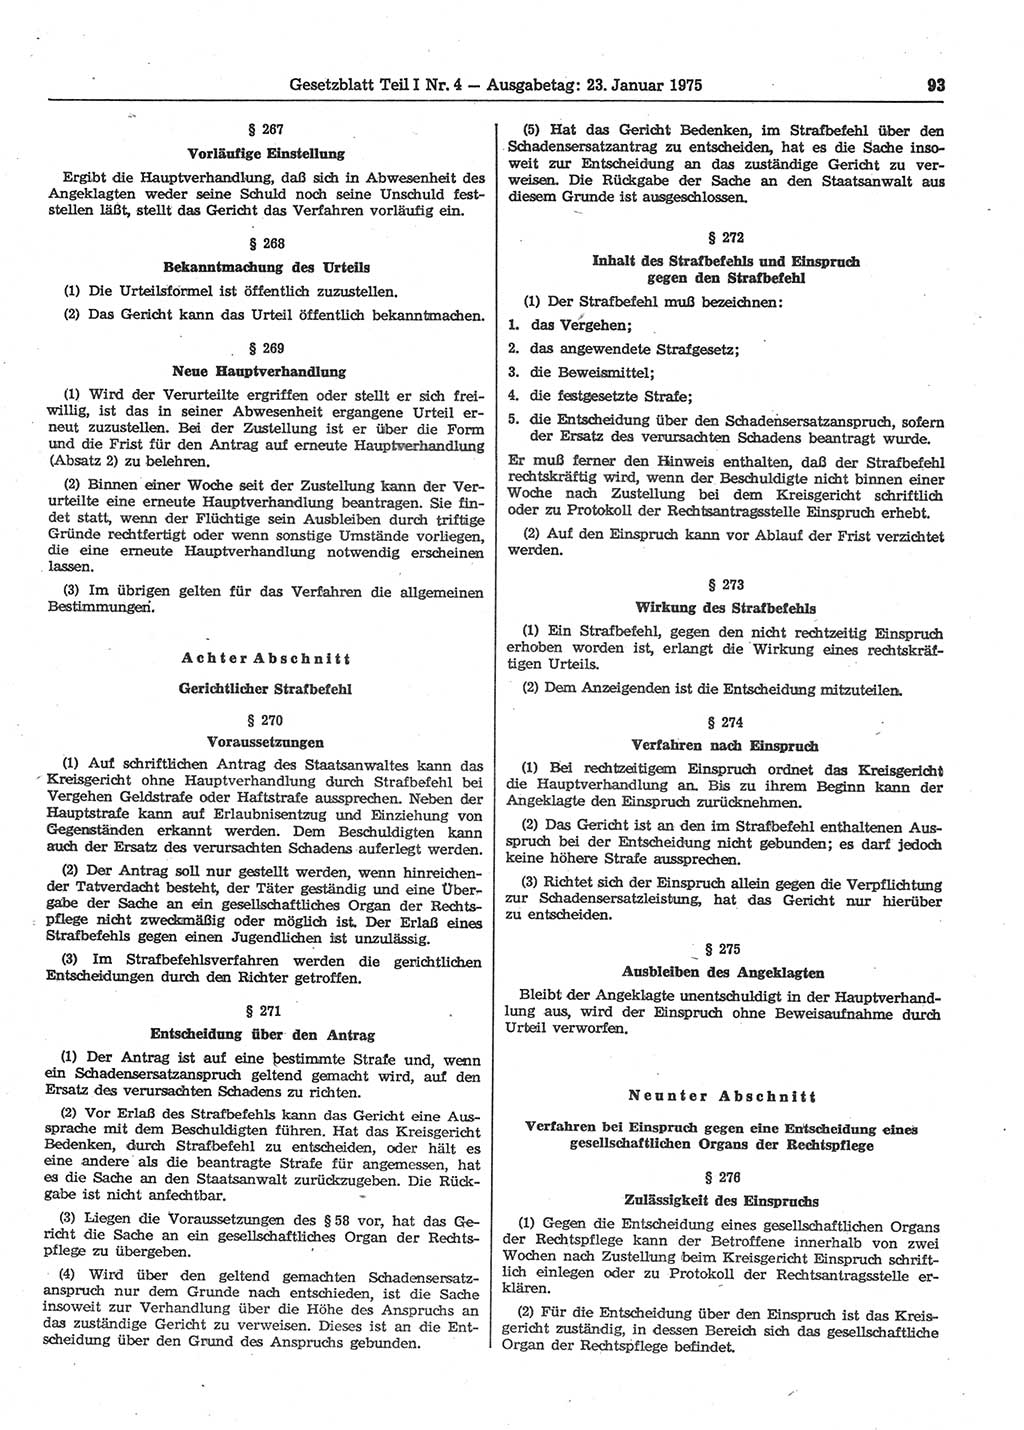 Gesetzblatt (GBl.) der Deutschen Demokratischen Republik (DDR) Teil Ⅰ 1975, Seite 93 (GBl. DDR Ⅰ 1975, S. 93)